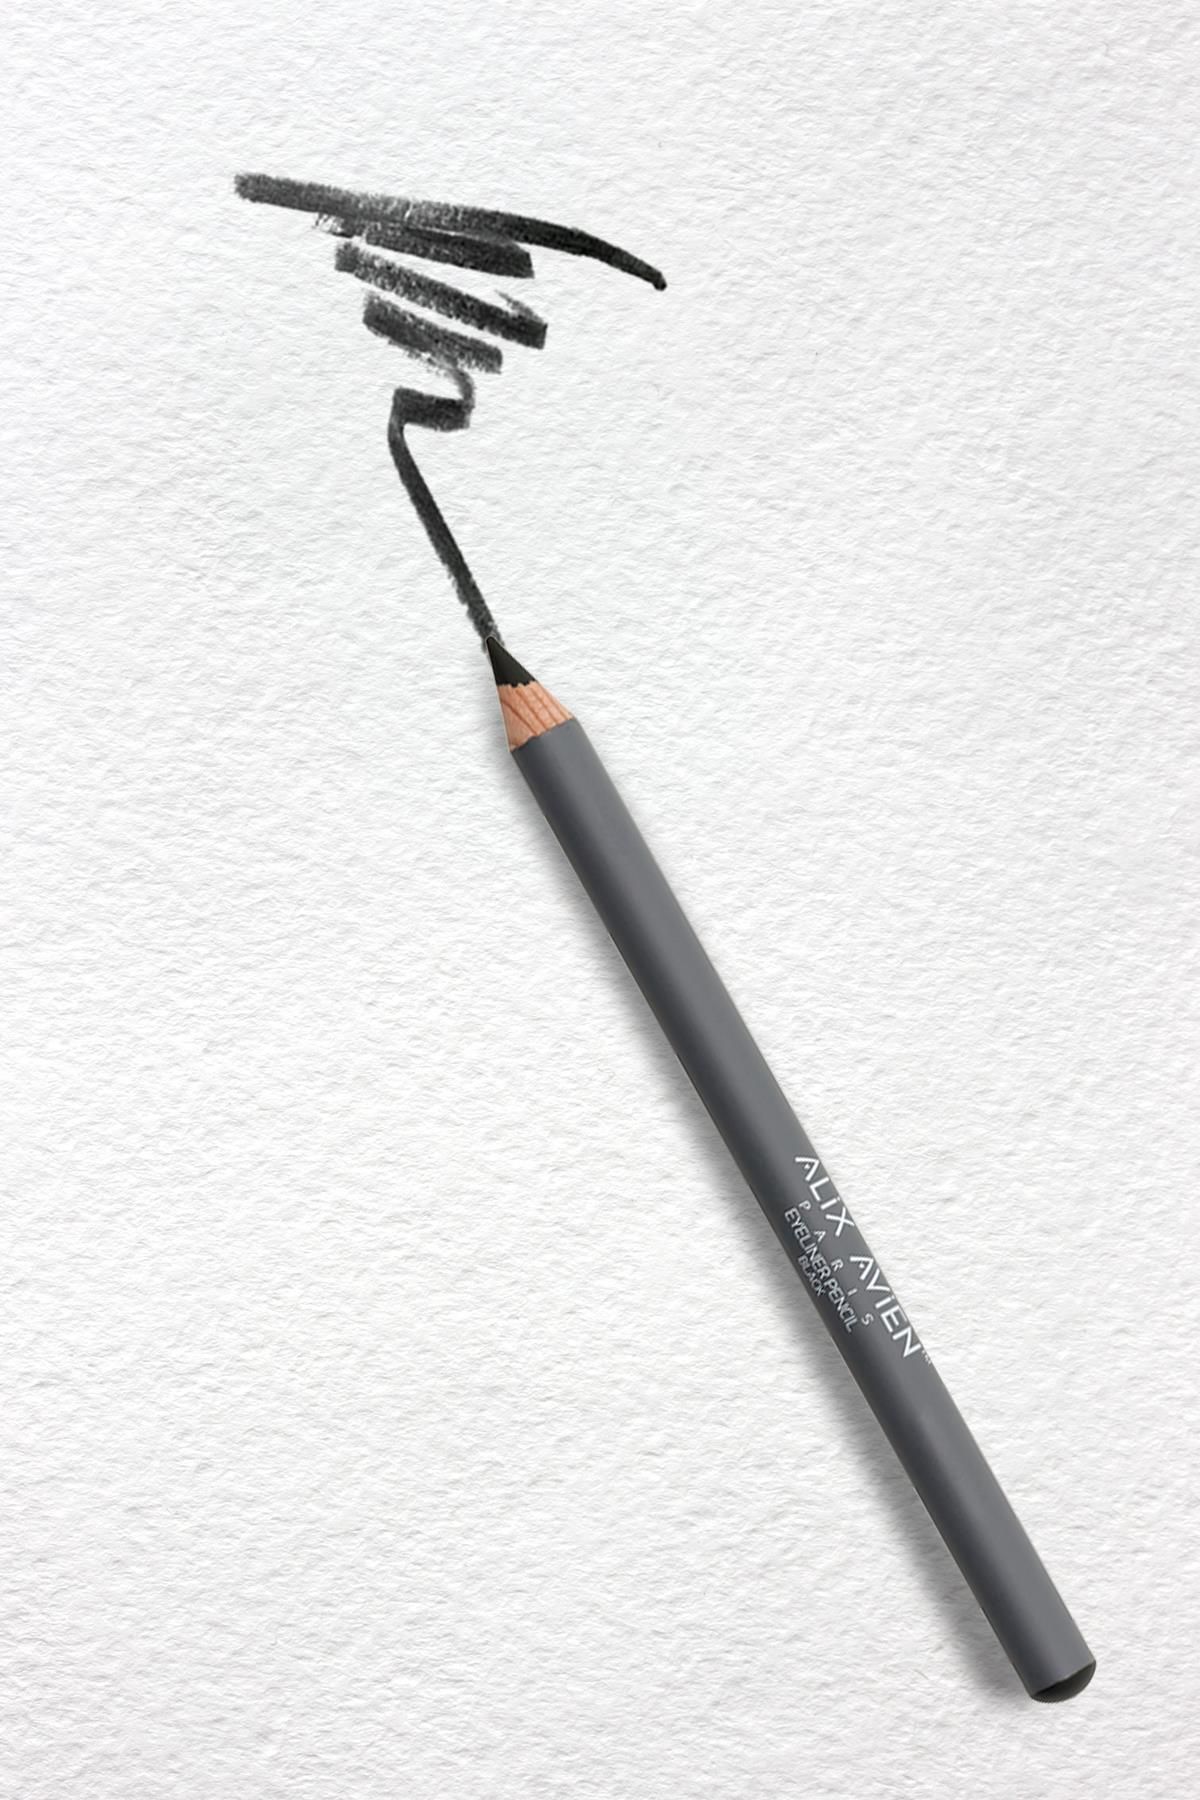 Alix Avien Siyah Göz Kalemi-yoğun Renk- Kremsi Yapı-7 Saate Kadar Kalıcı Etki - Eyeliner Pencil Black